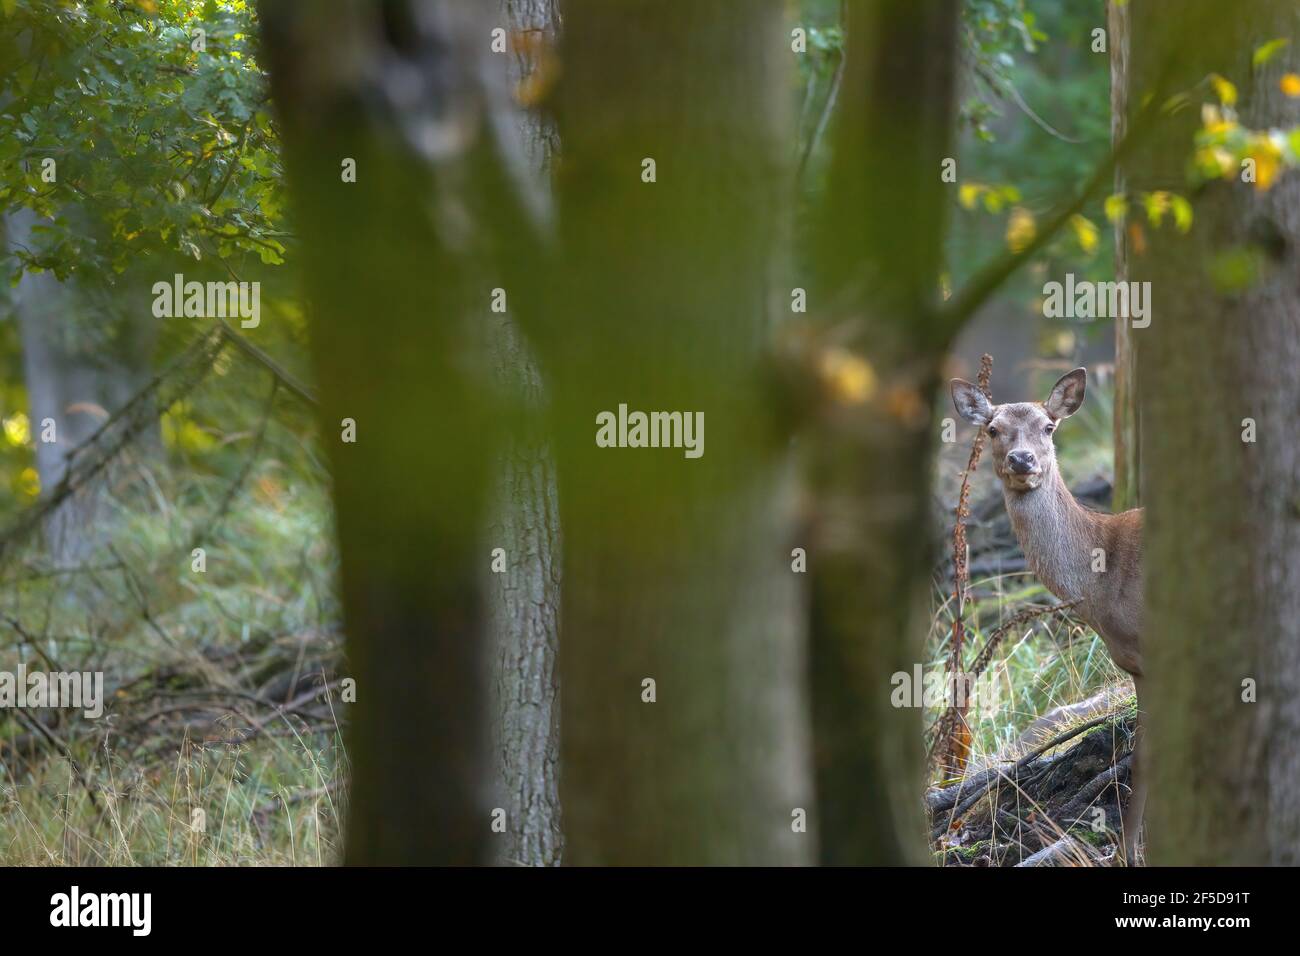 red deer (Cervus elaphus), hind peering between tree trunks, Germany, Mecklenburg-Western Pomerania Stock Photo